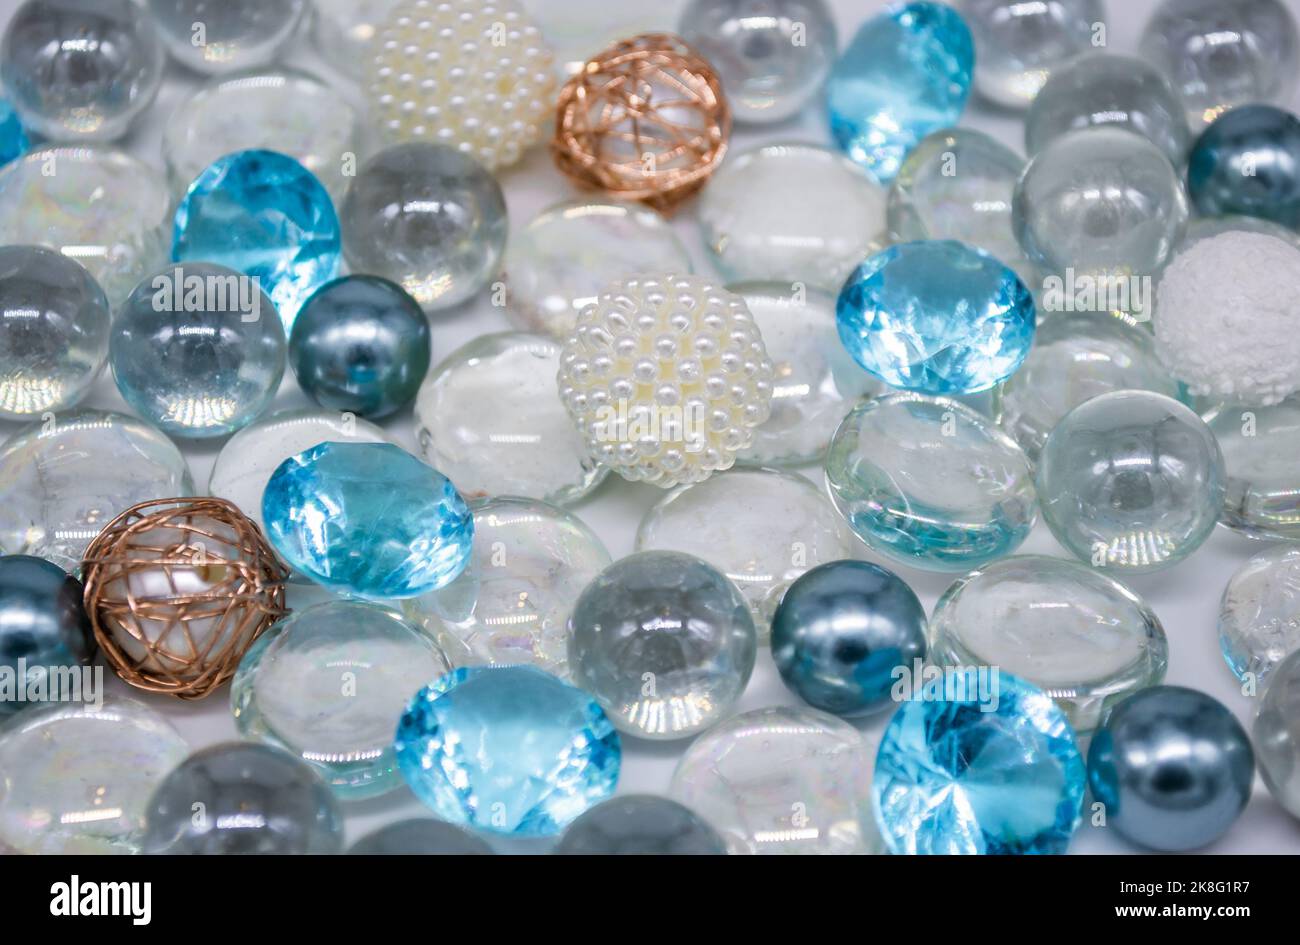 Schöner Hintergrund aus transparenten, hellblauen Glasperlen, Kristallen und weißen Perlen. Speicherplatz kopieren. Stockfoto